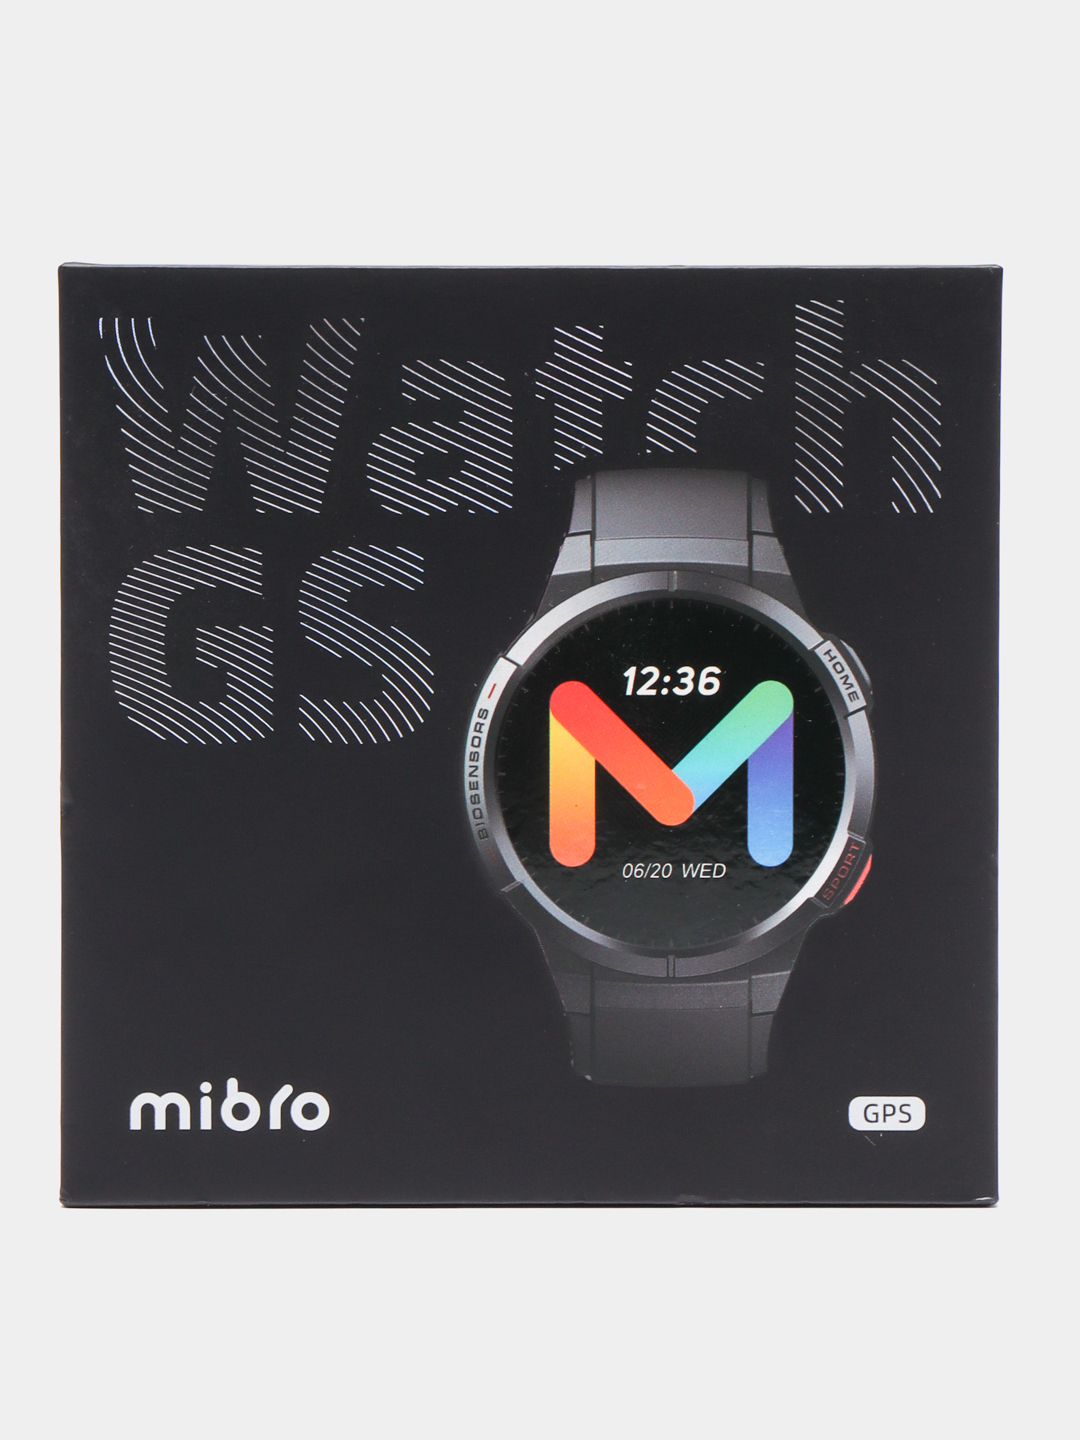 Mibro watch GS. Xiaomi Mibro watch GS Pro (xpaw013) eu обзоры. Xiaomi Mibro c3 xpaw014 Navy Blue eu. Xiaomi Mibro c3 xpaw014 Navy Blue. Часы mibro watch gs pro